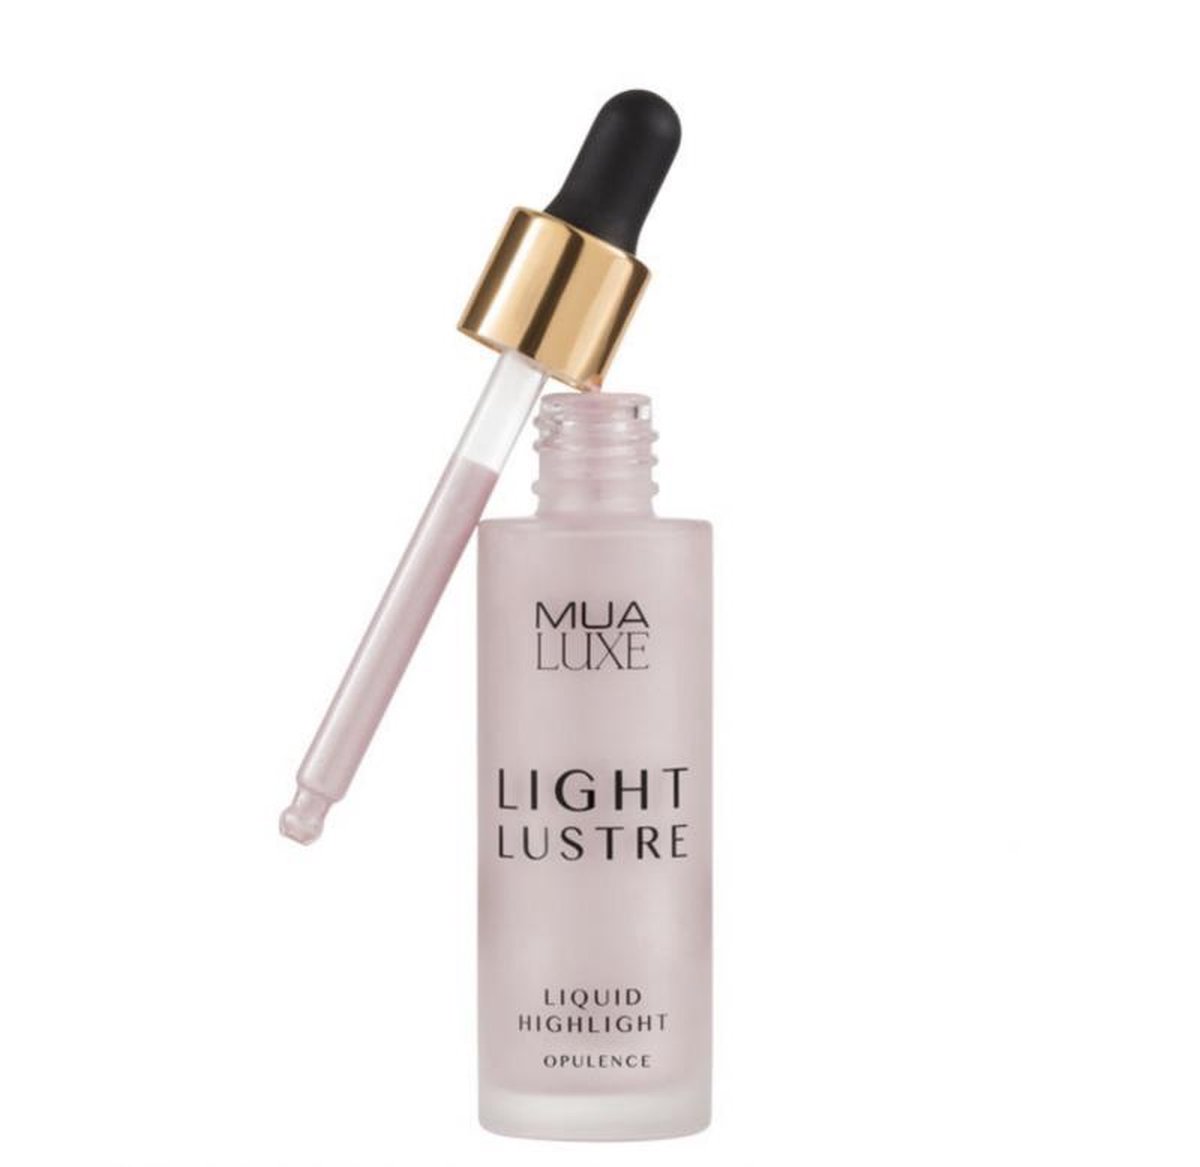 MUA Light Lustre liquid highlight